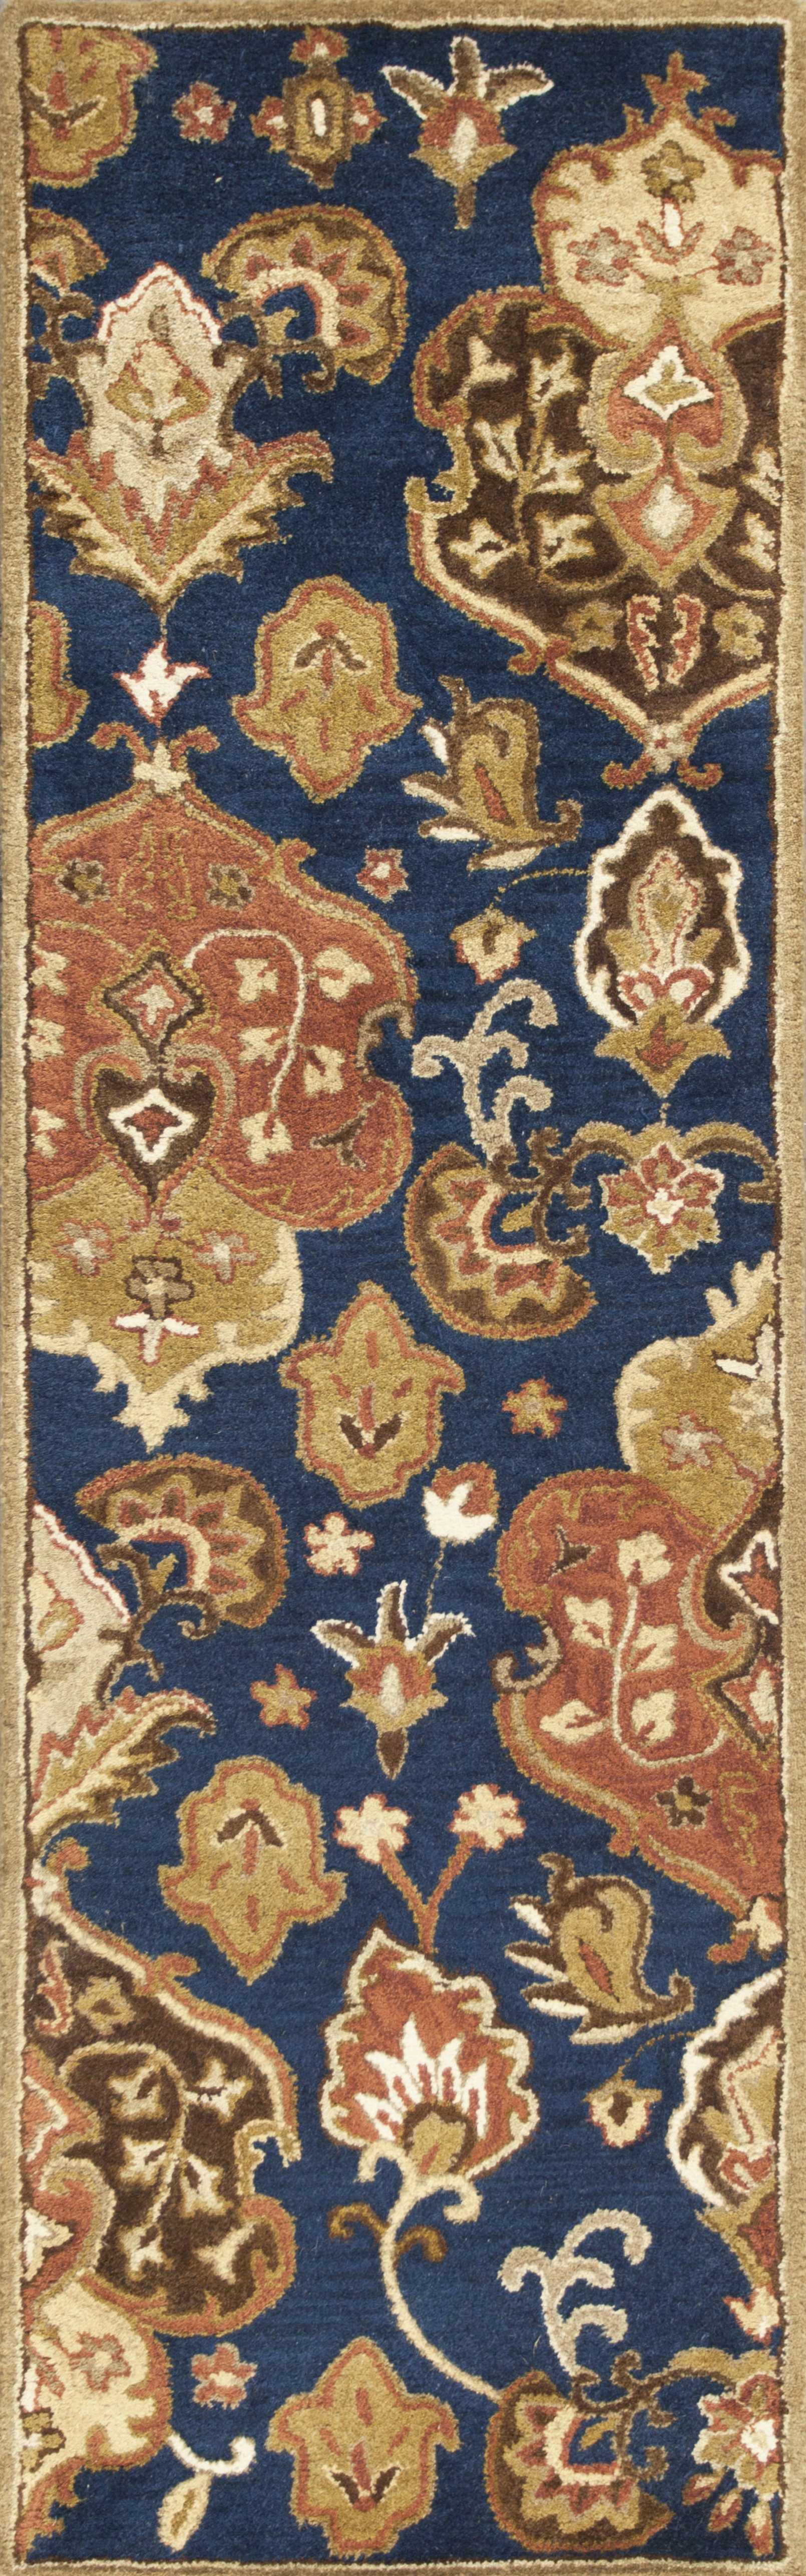 2' X 7' Navy Floral Tapestry Wool Runner Rug-375534-1